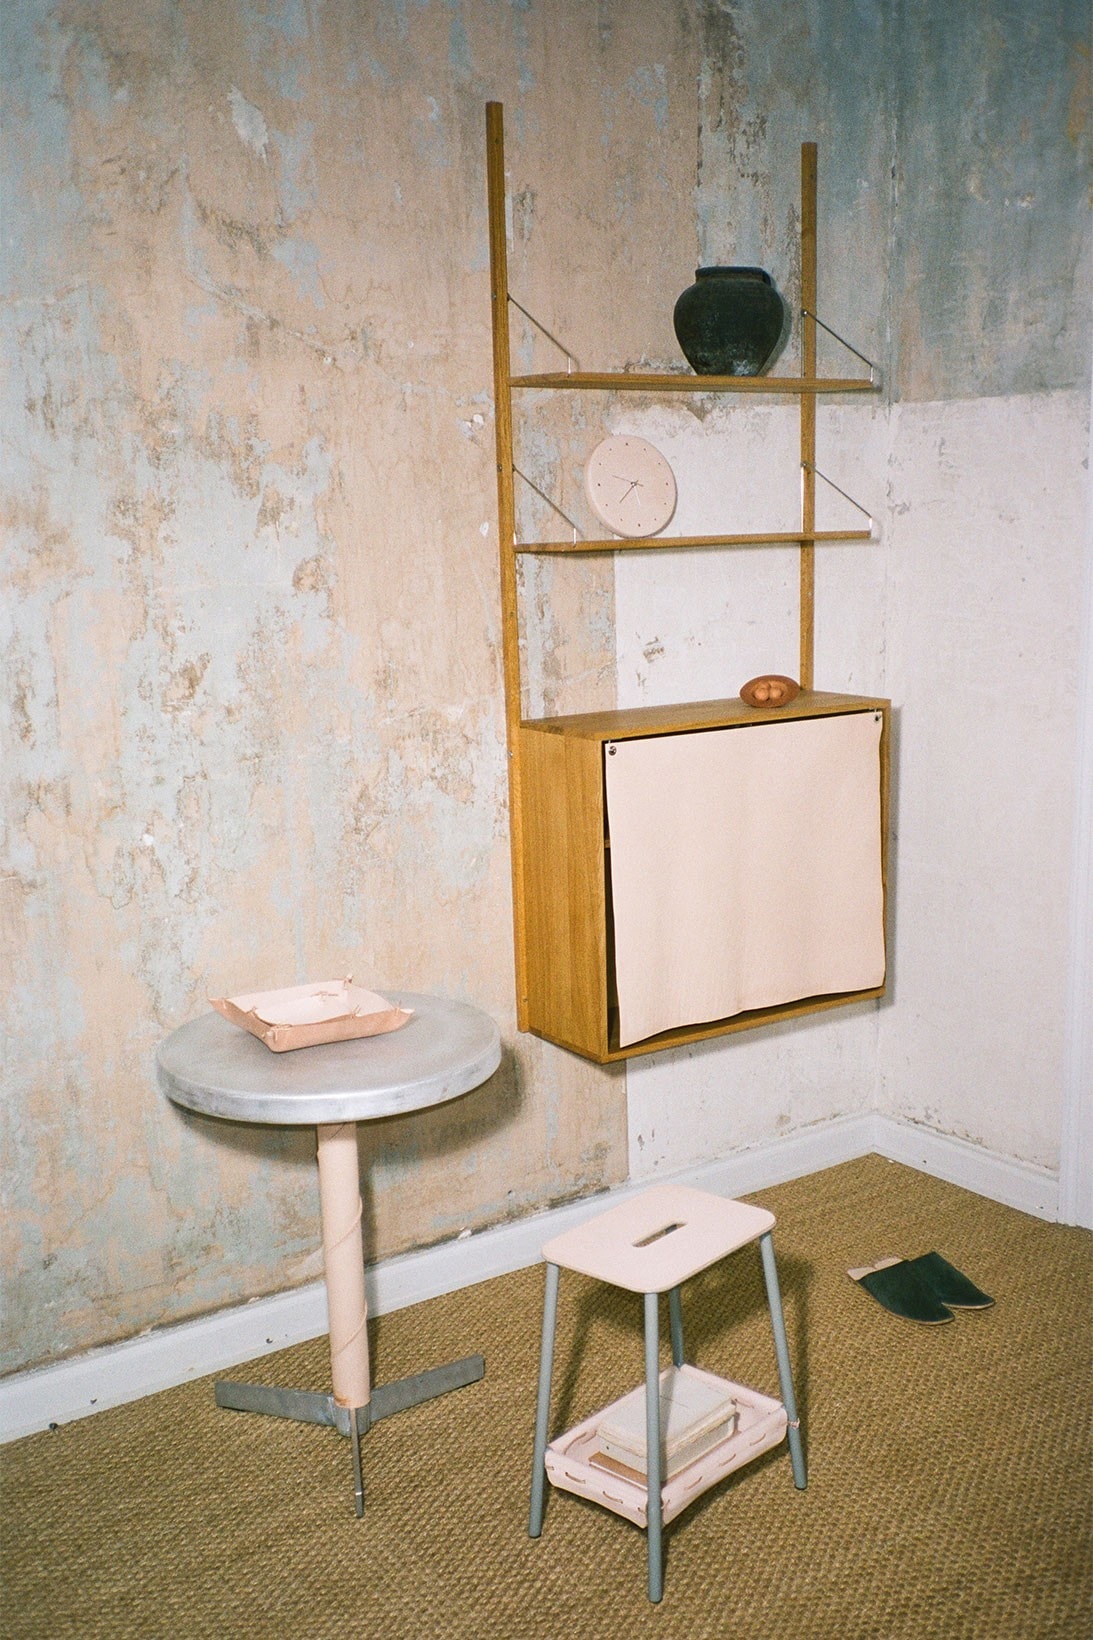 デンマーク・コペンハーゲン拠点のブランド フラマとエンダースキーマがコラボコレクションをリリース hender-scheme-frama-home-goods-furniture-decor-collaboration-release-date